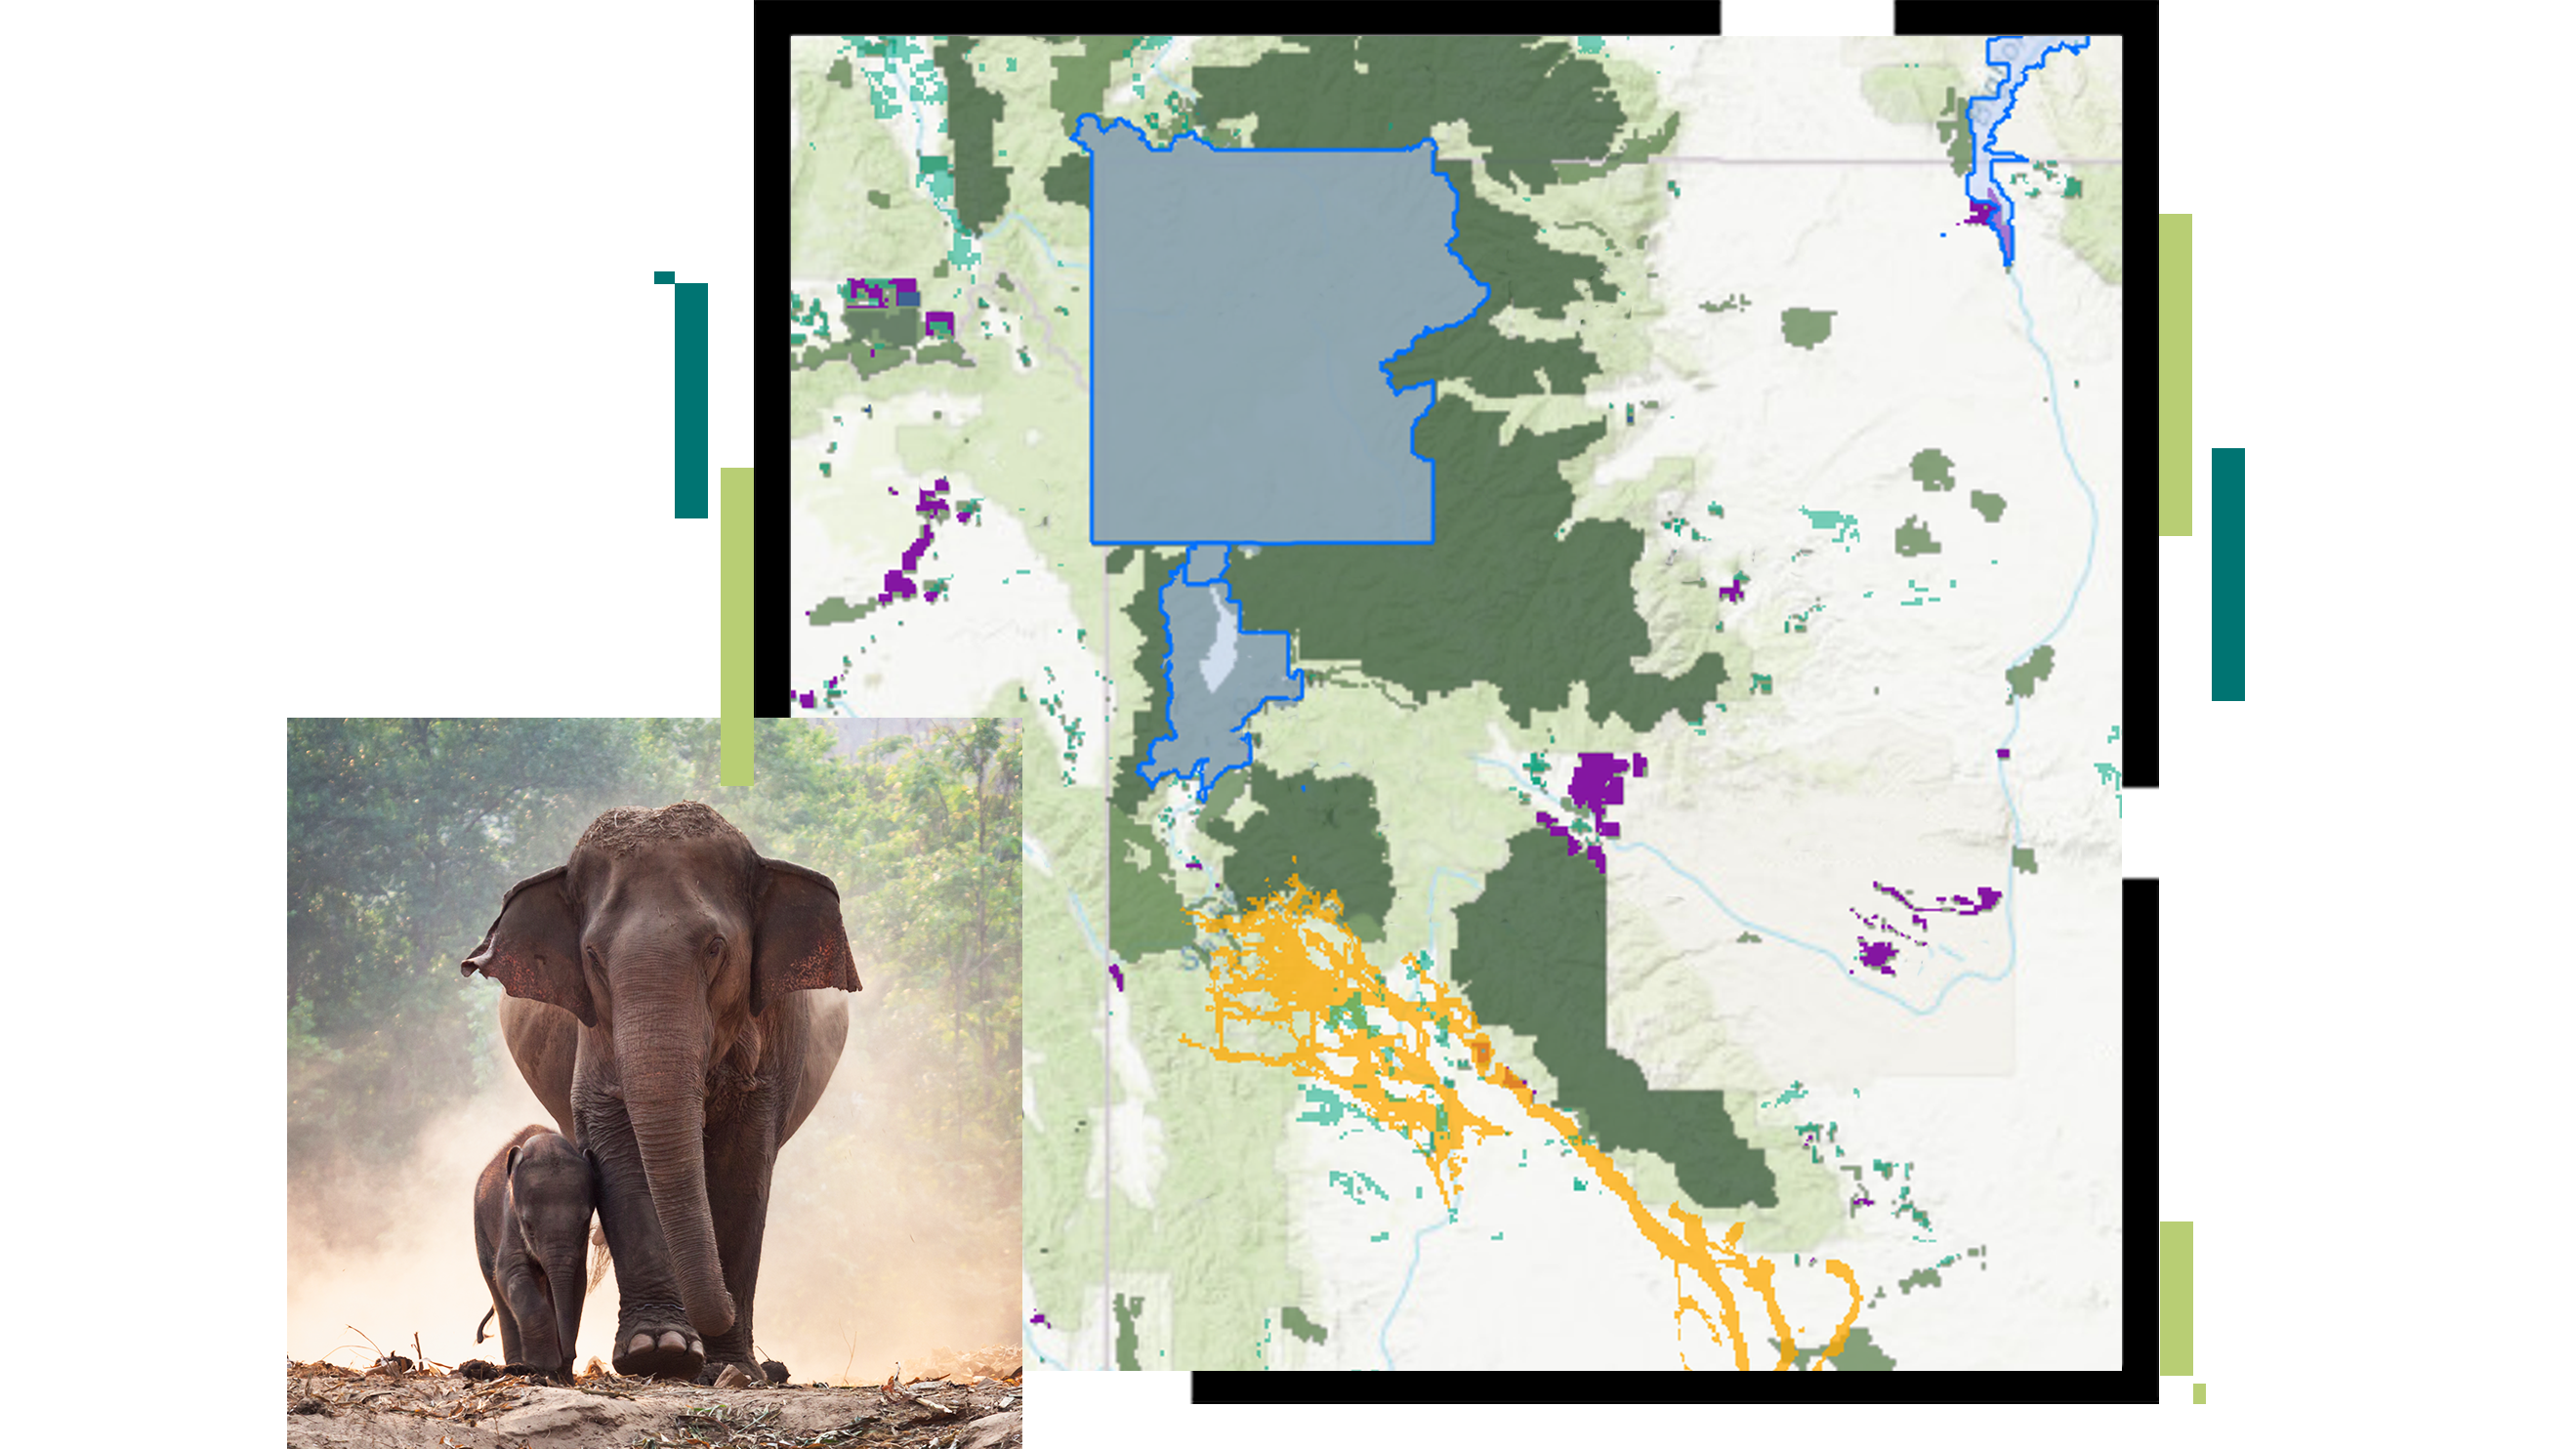 Карта с предлагаемой заповедной зоной, выделенной синим цветом, на которую наложено изображение слона и его детеныша.